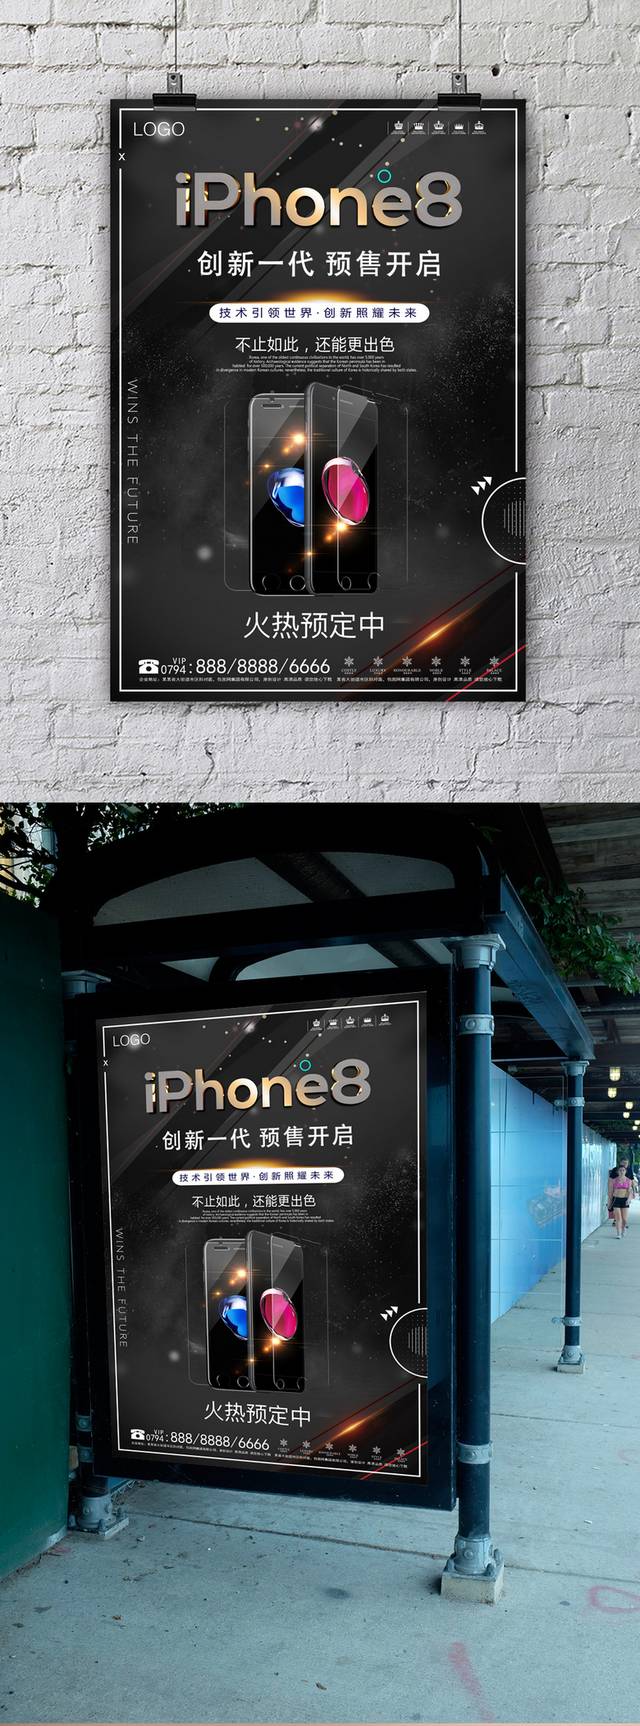 新一代iPhone预售海报